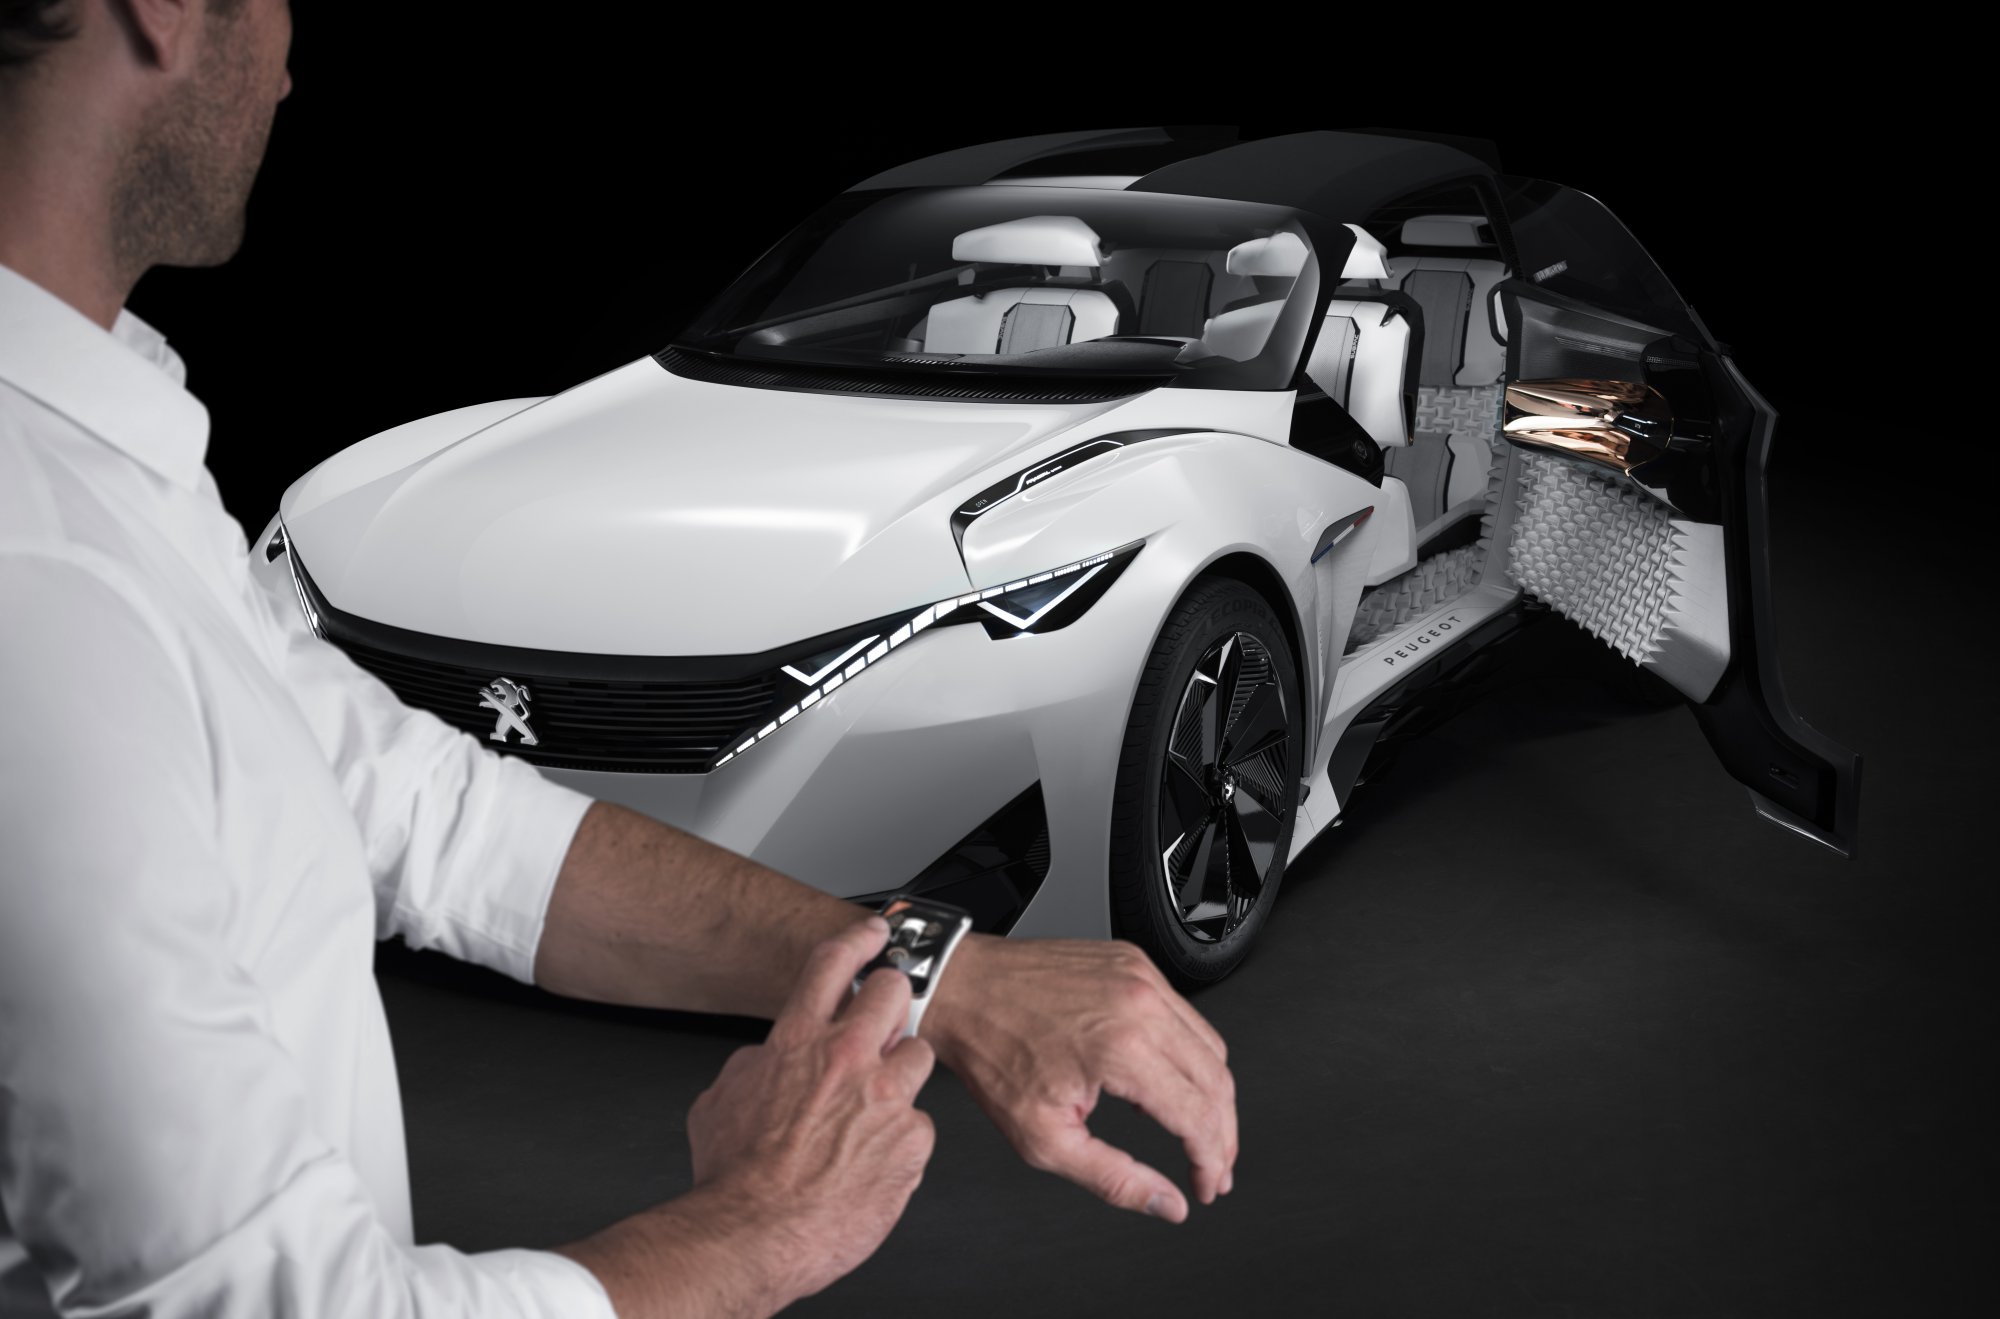 Peugeot Fractal concept at frankfurt is glimpse of future car interiors